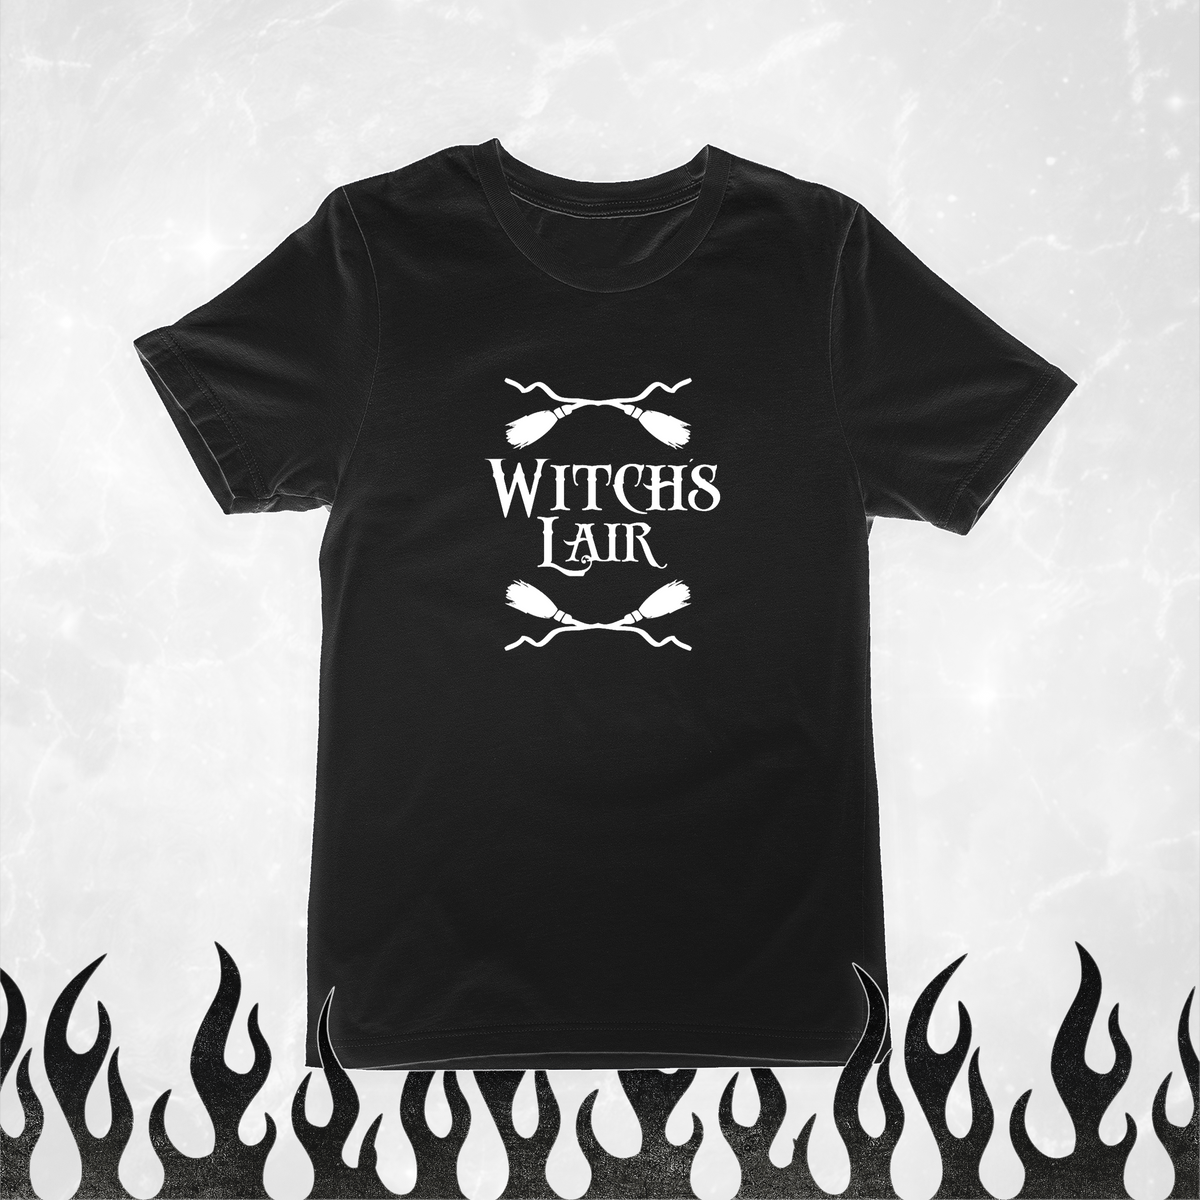 Nome do produto: Witches